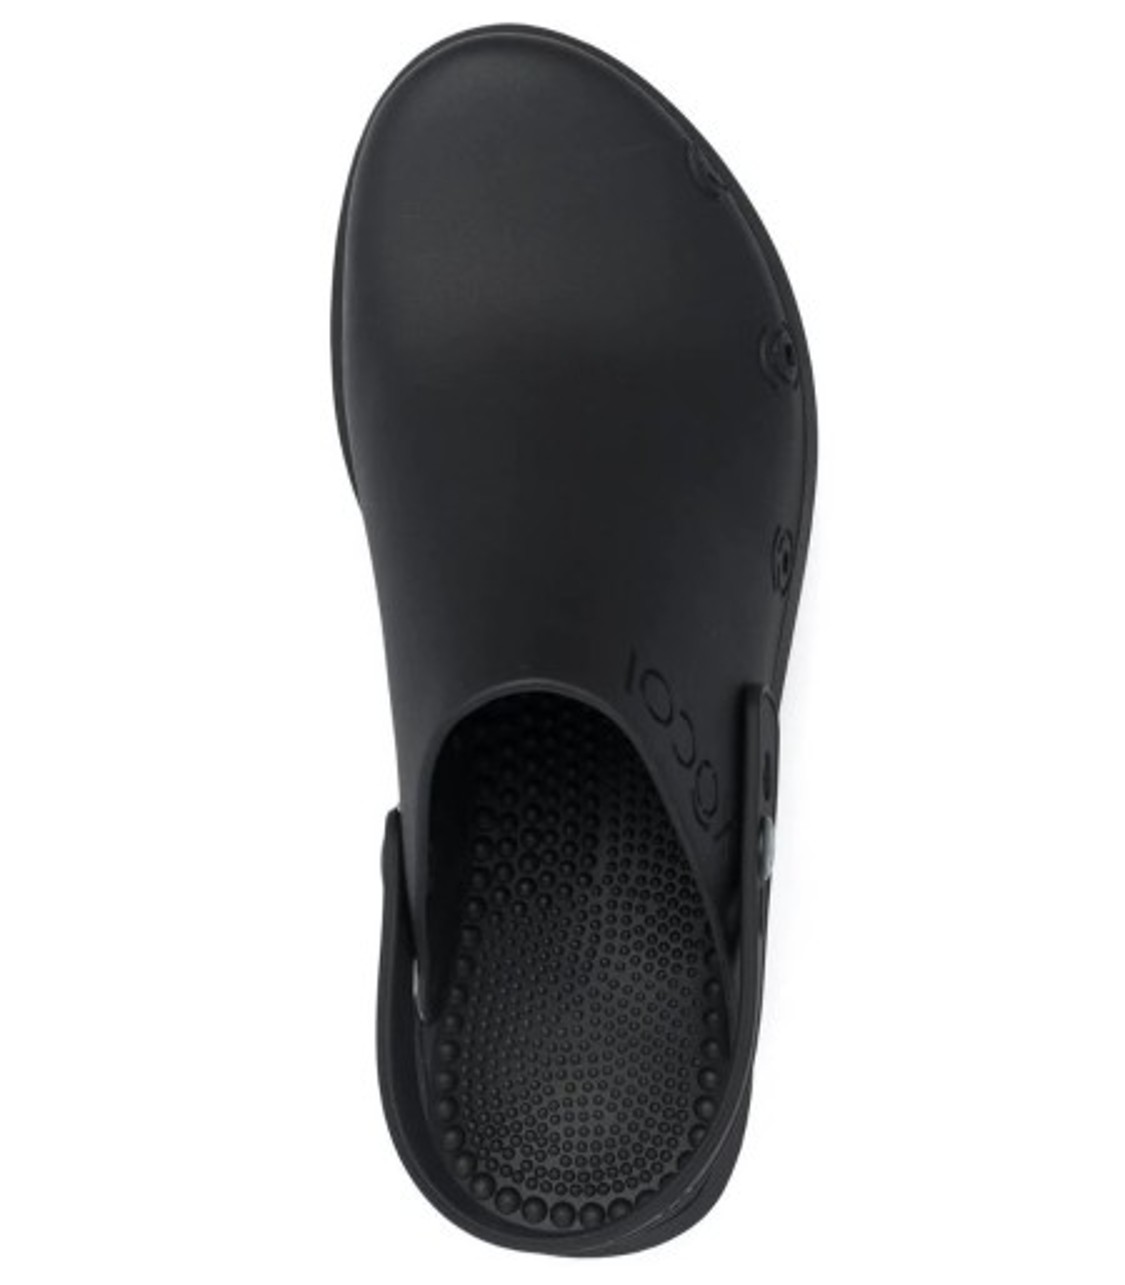 shop Xocoi  Scarpe: Scarpe Xocoi, zoccoli in gomma riciclata, cinturino regolabile con bottone, bocchette di ventilazione laterali, suola interna dentata per una maggiore comodità, in color nero.
Suola: 6 cm. number 2411